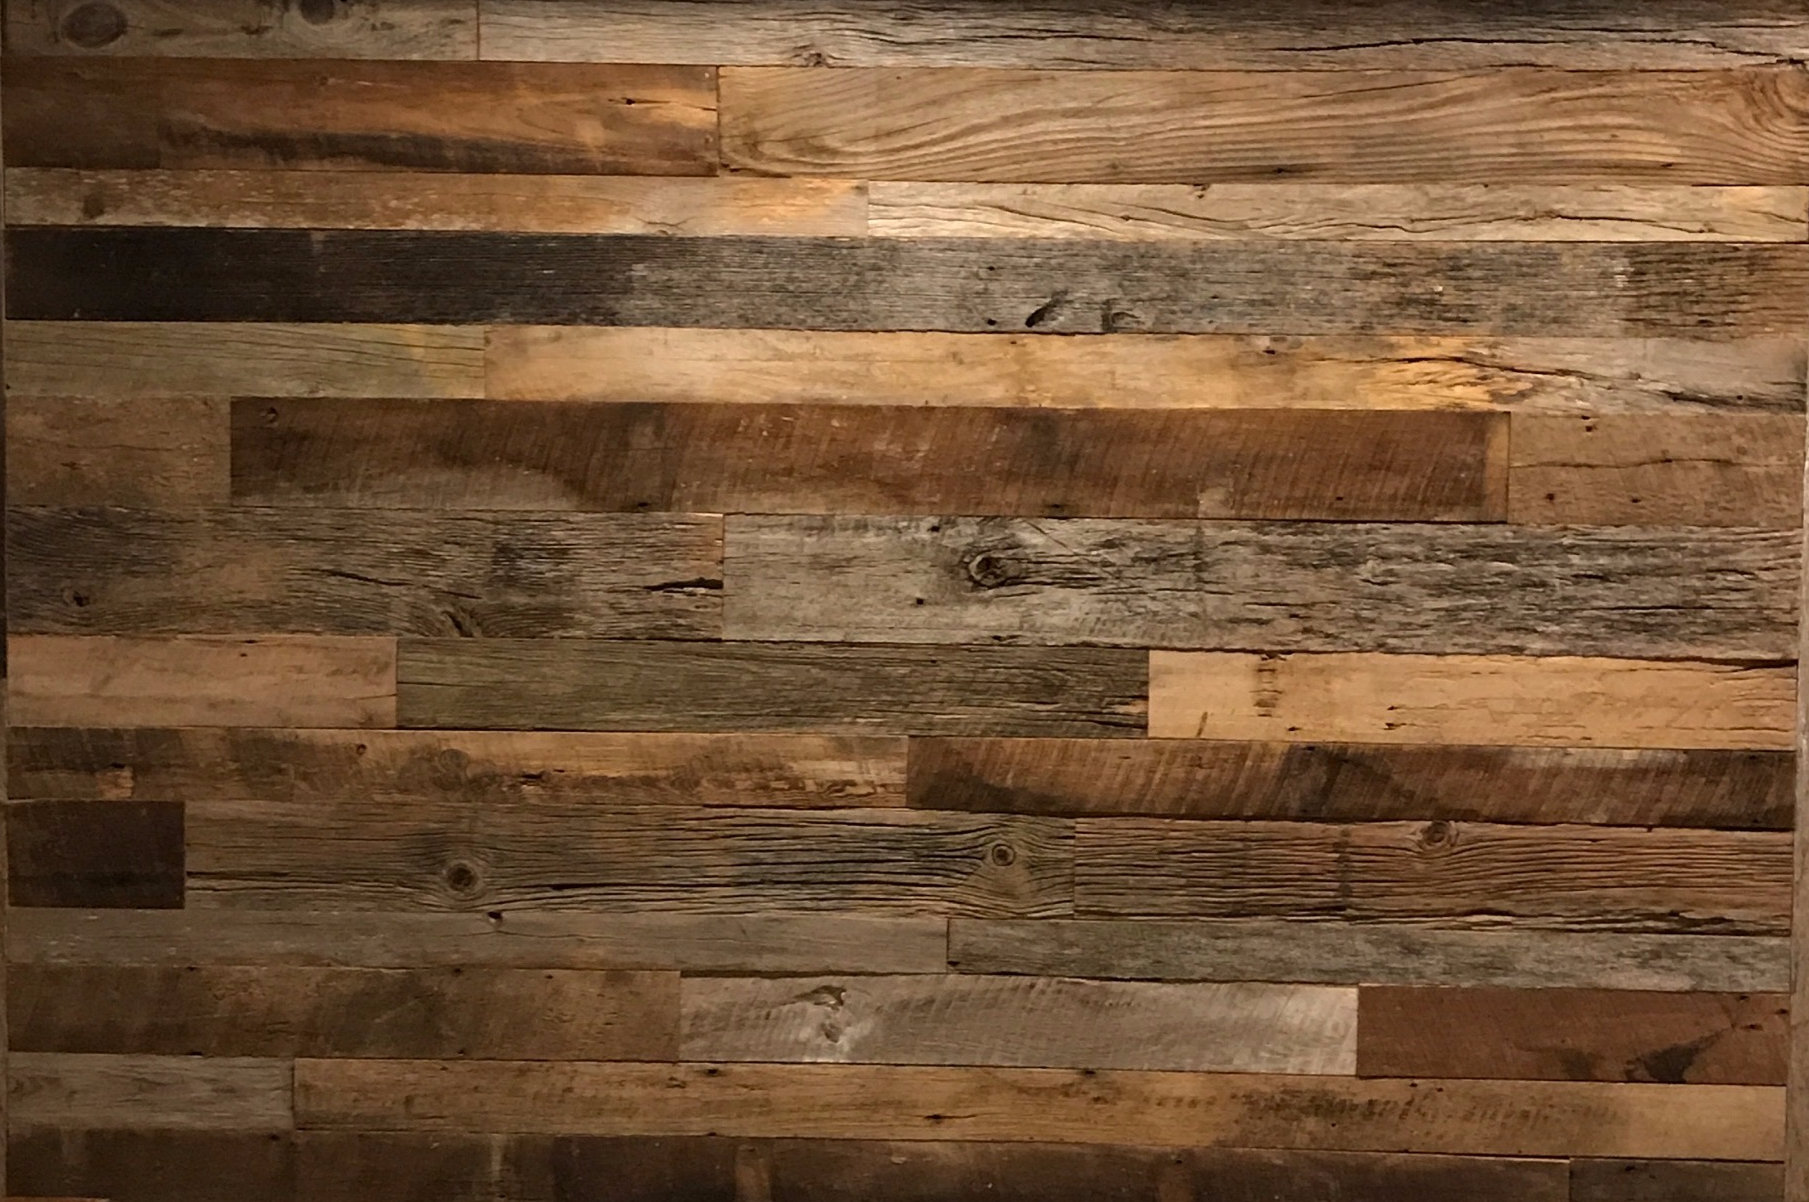 wooden walls